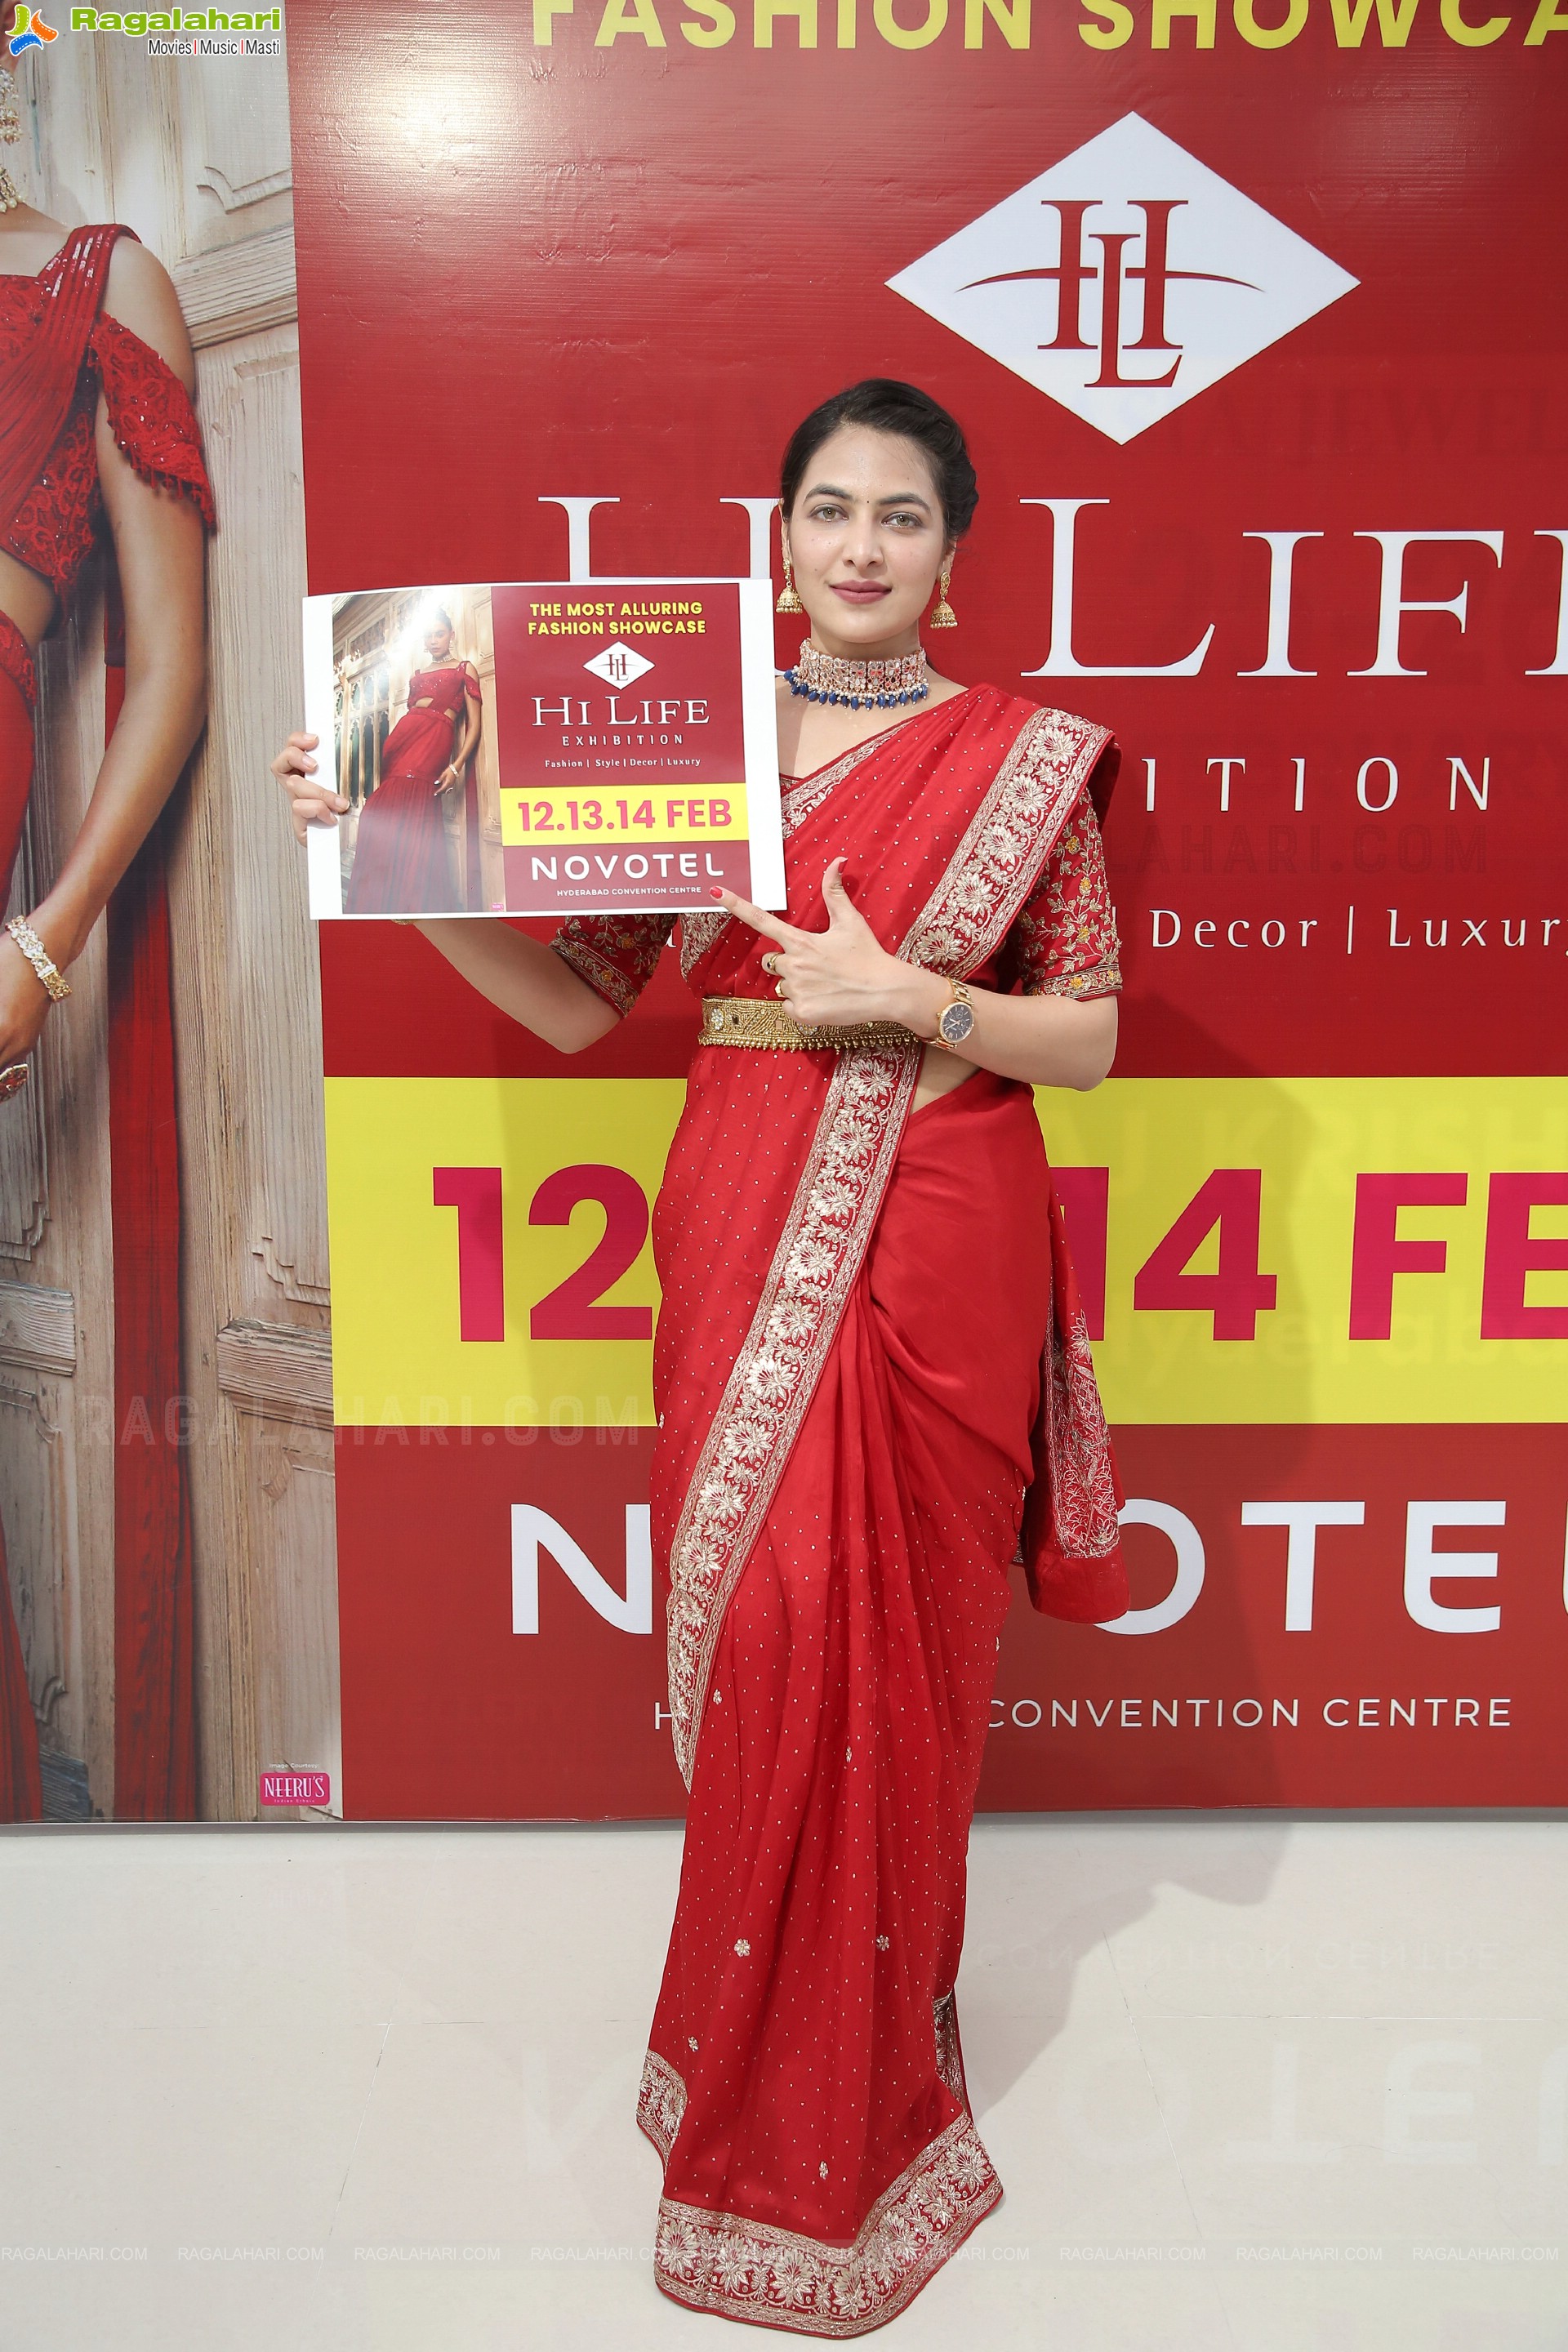 Hi Life Exhibition Fashion Showcase Unveiling Dates of February Exhibition